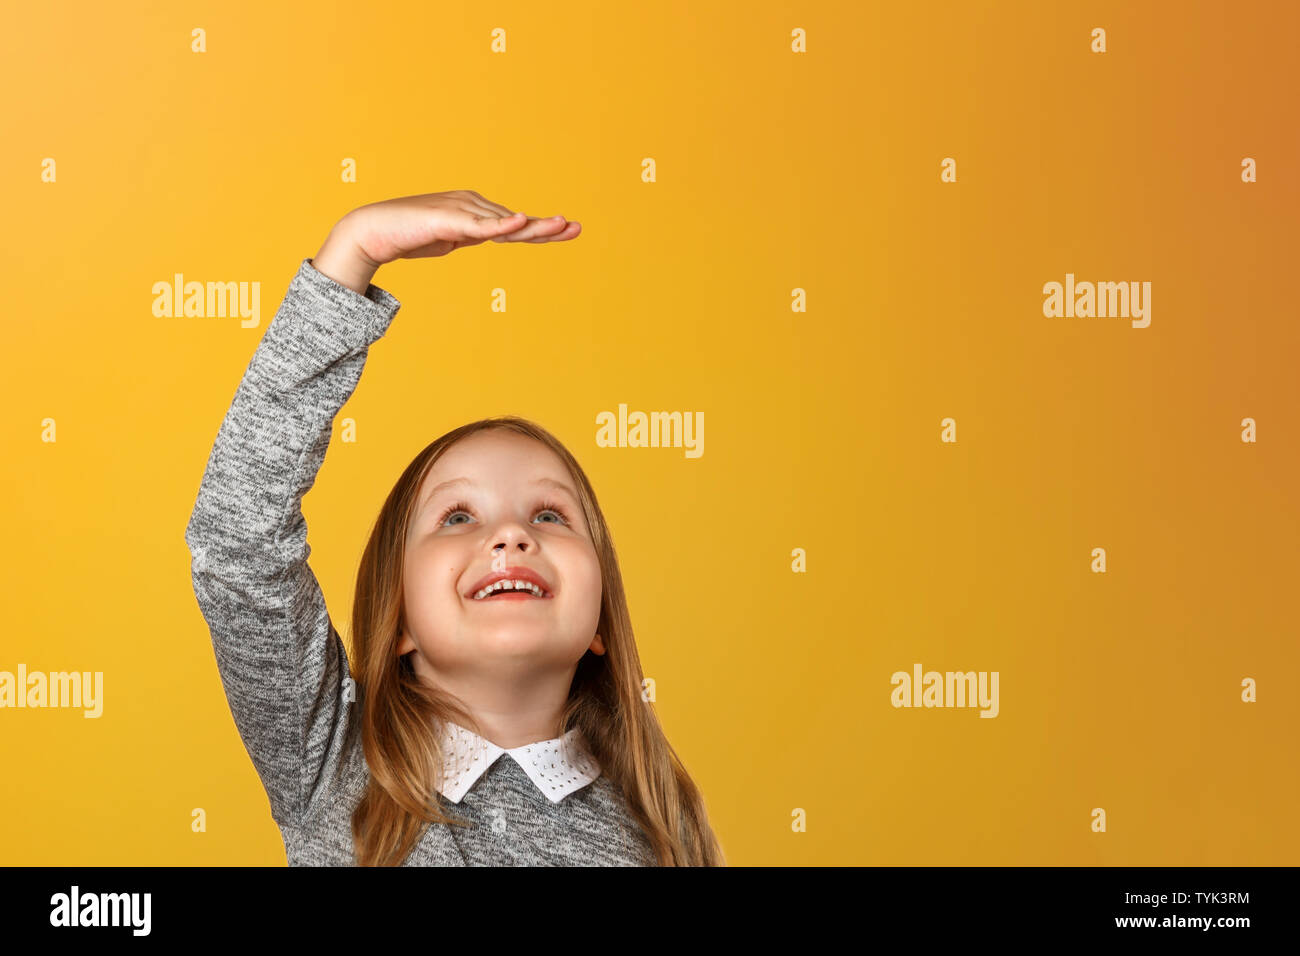 Closeup ritratto di una bambina su uno sfondo giallo. Le misure del bambino la sua altezza. Foto Stock